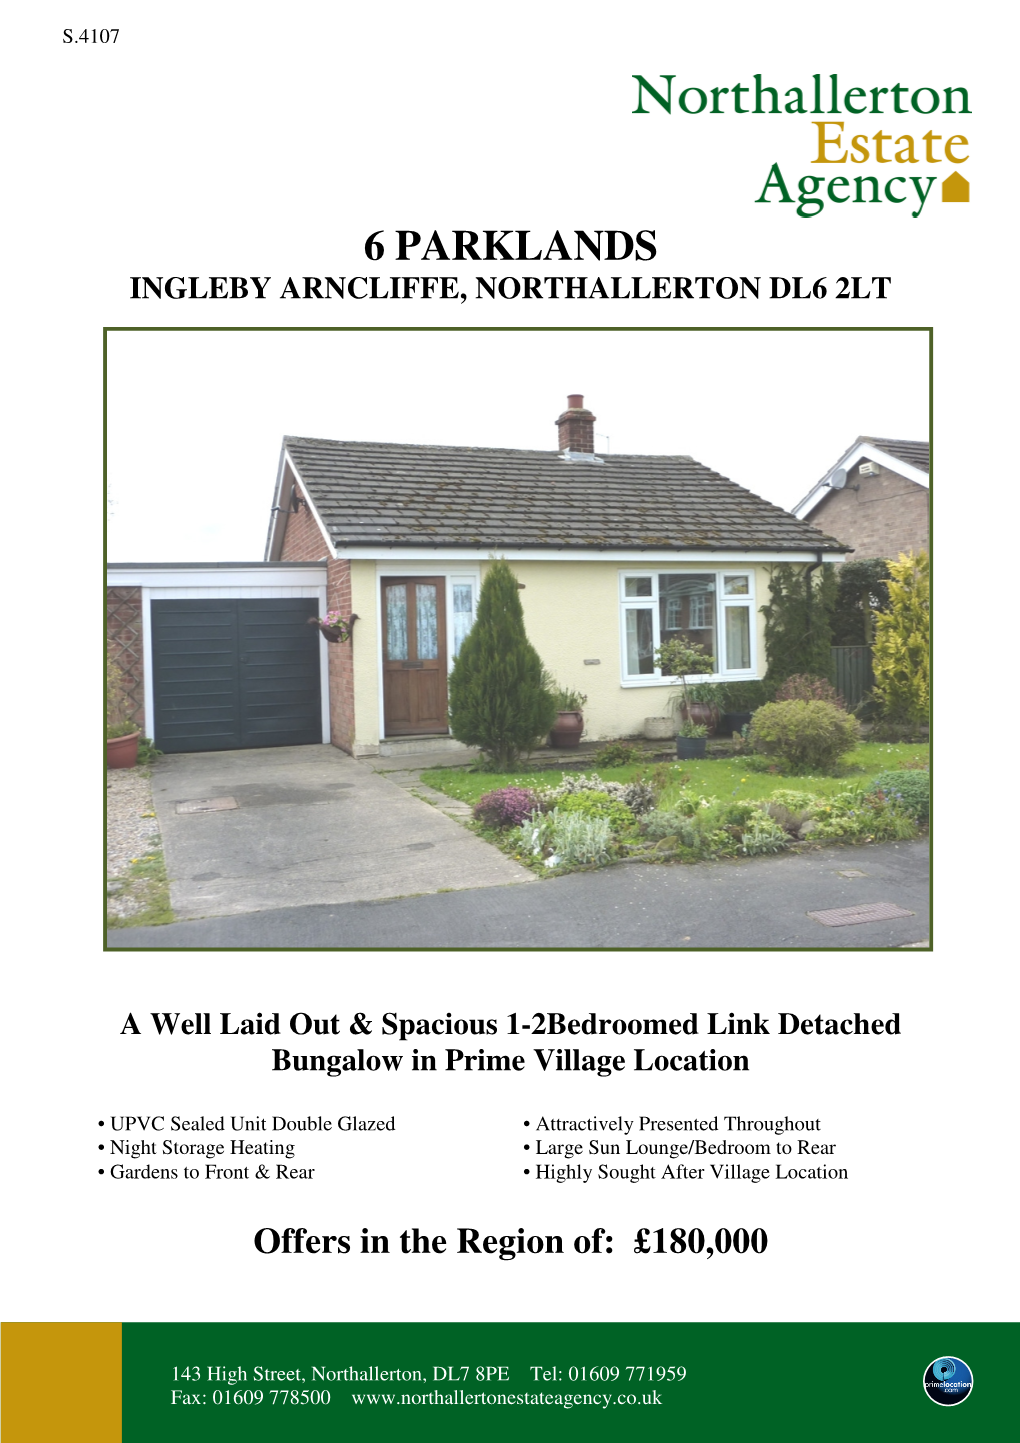 6 Parklands Ingleby Arncliffe, Northallerton Dl6 2Lt